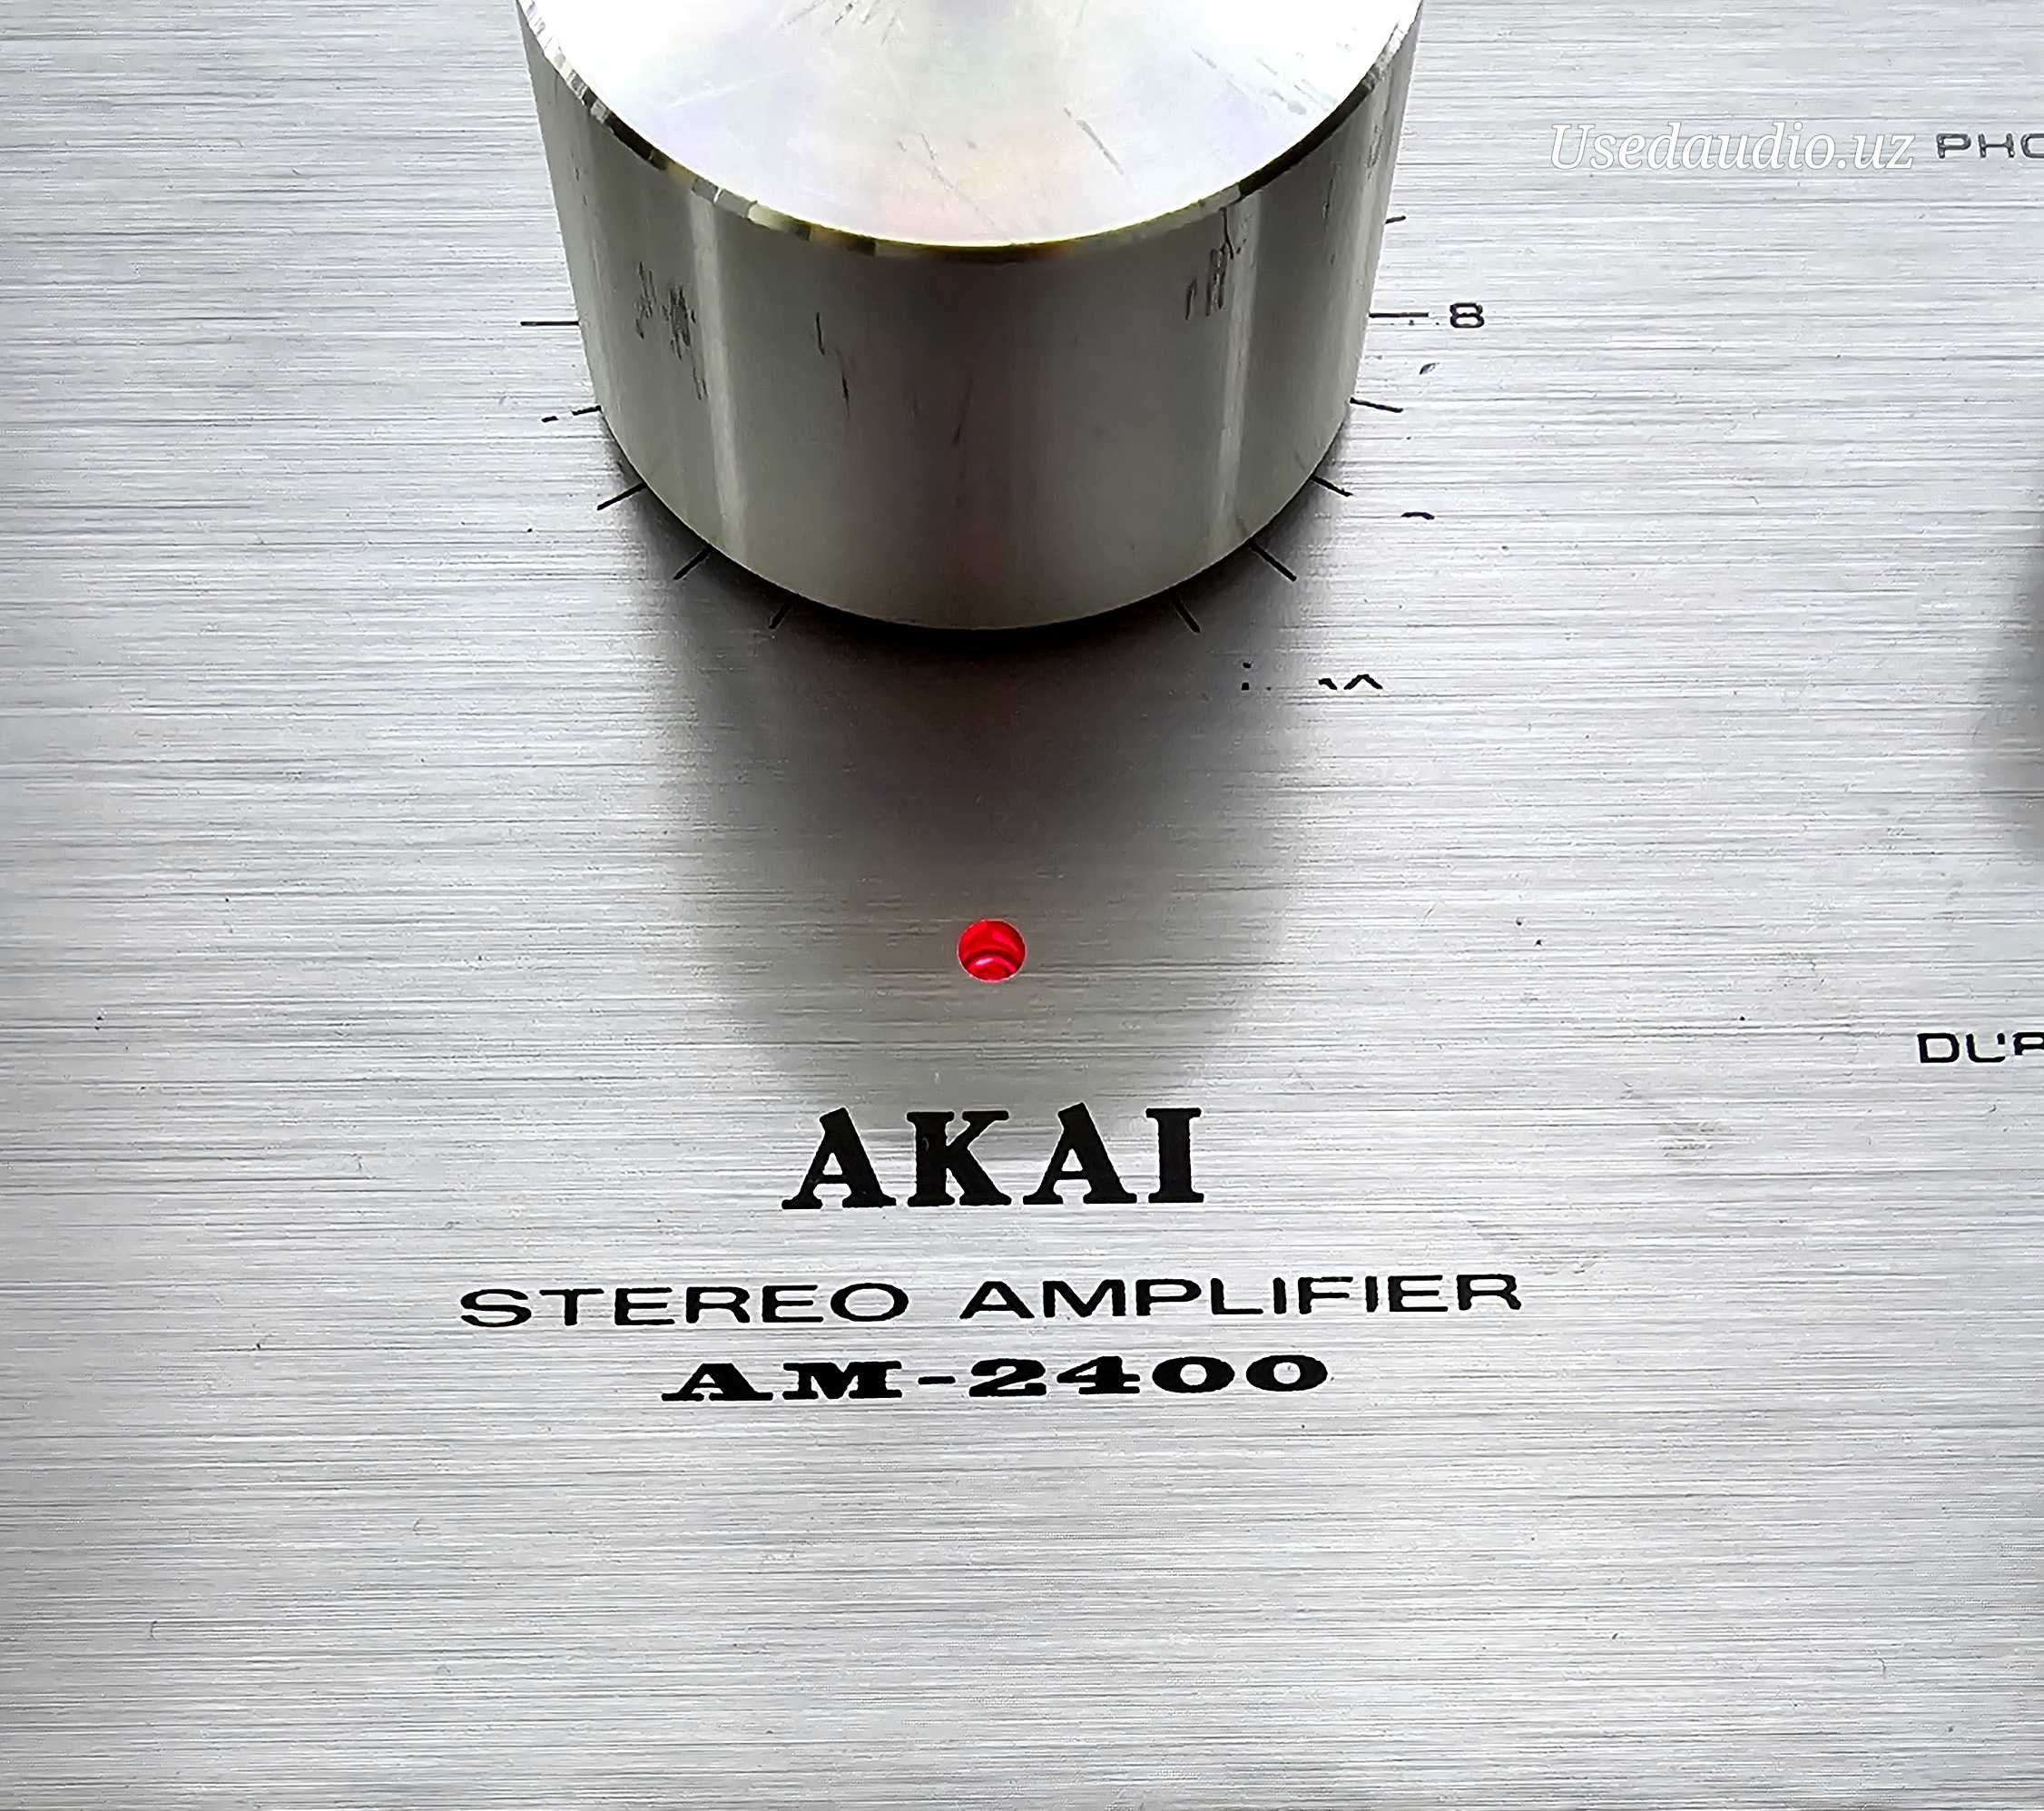 Усилитель AKAI AM-2400.